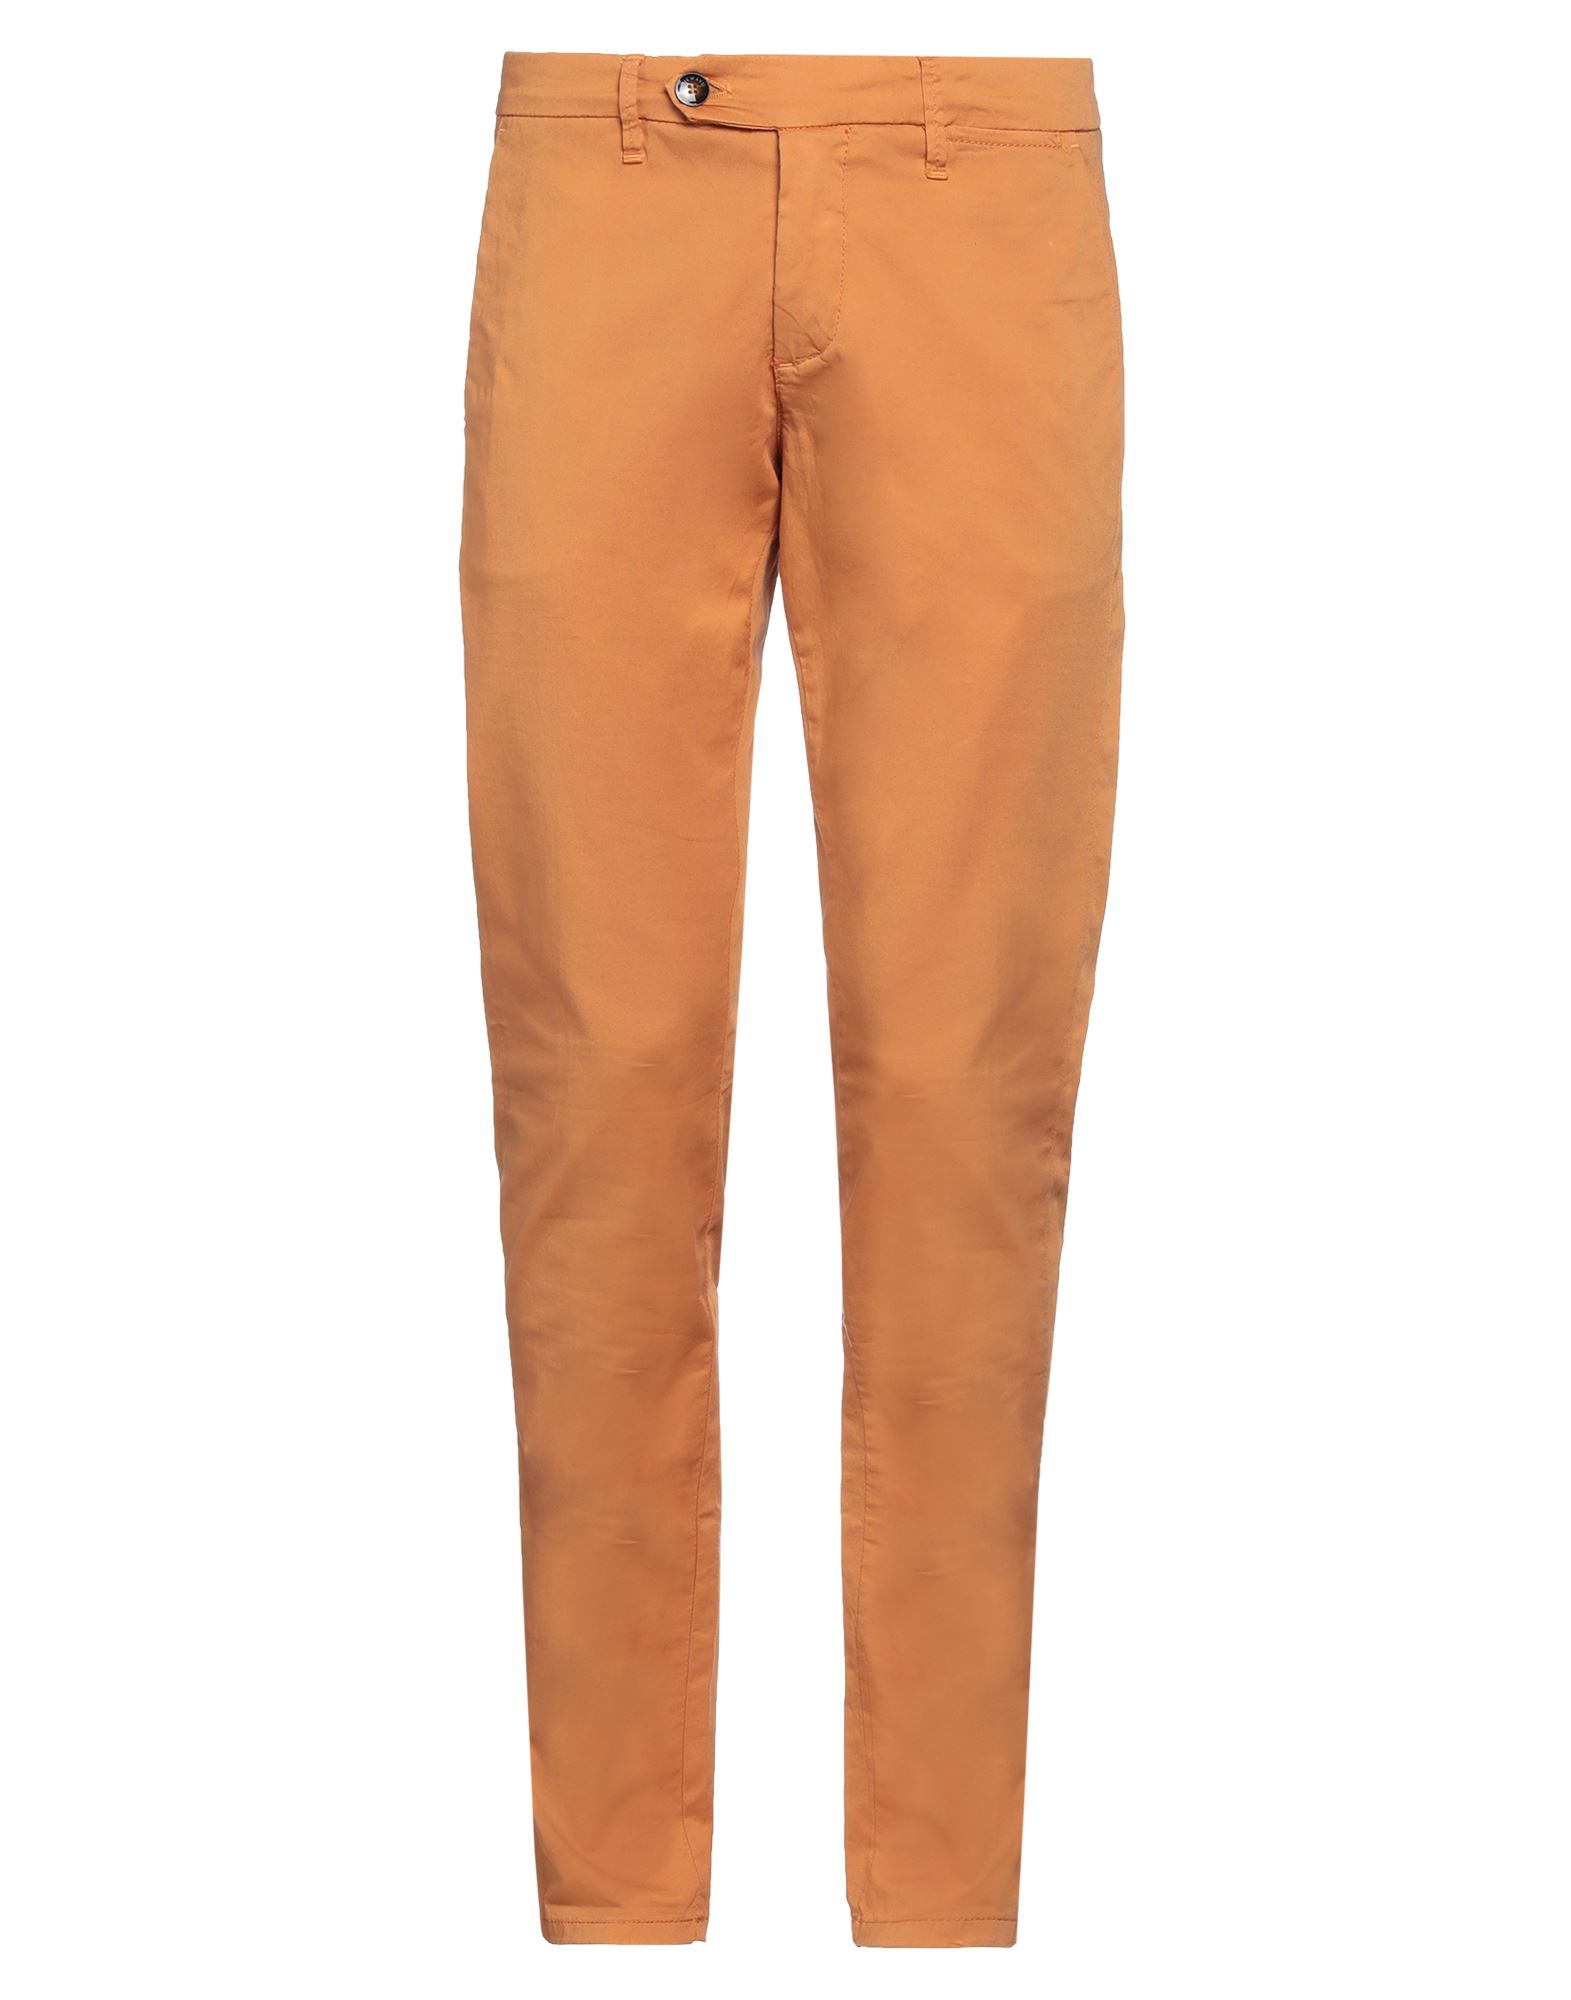 Nicwave Pants In Orange